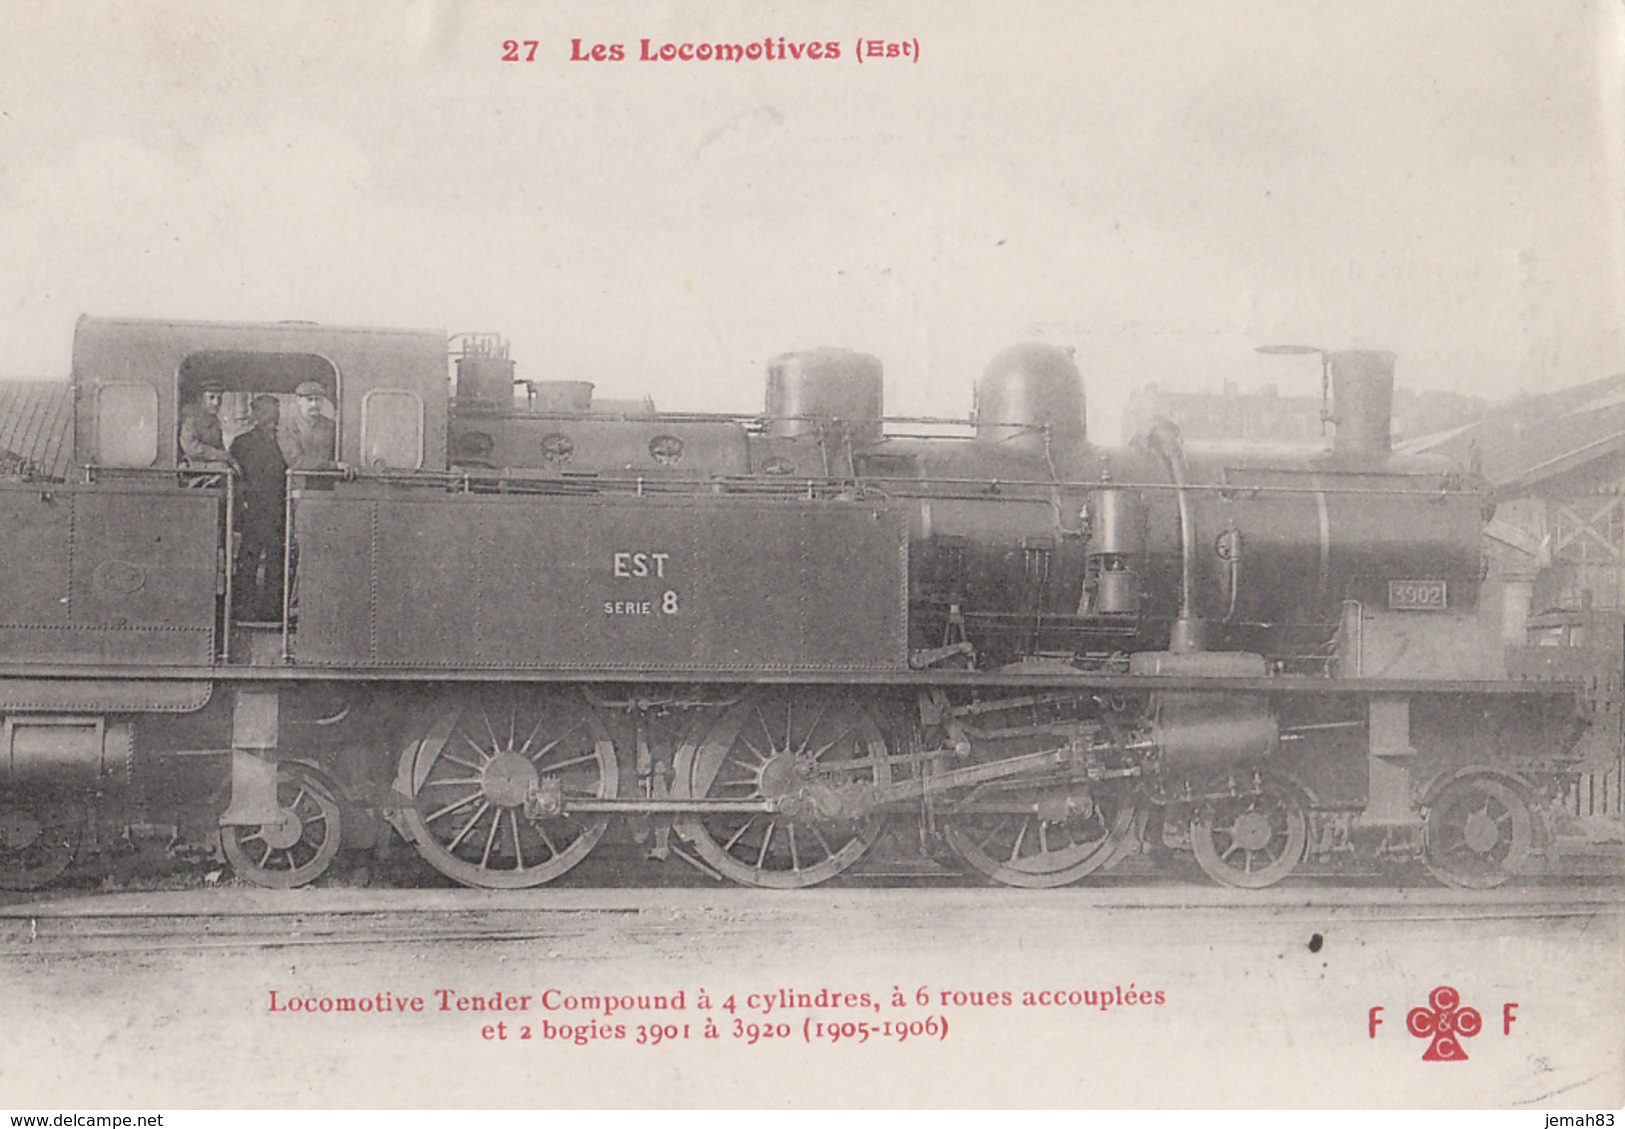 LES LOCOMOTIVES(est) Locomotive Tender Compound A 4 Cylindres A 6 Roues(LOT AE18) - Matériel